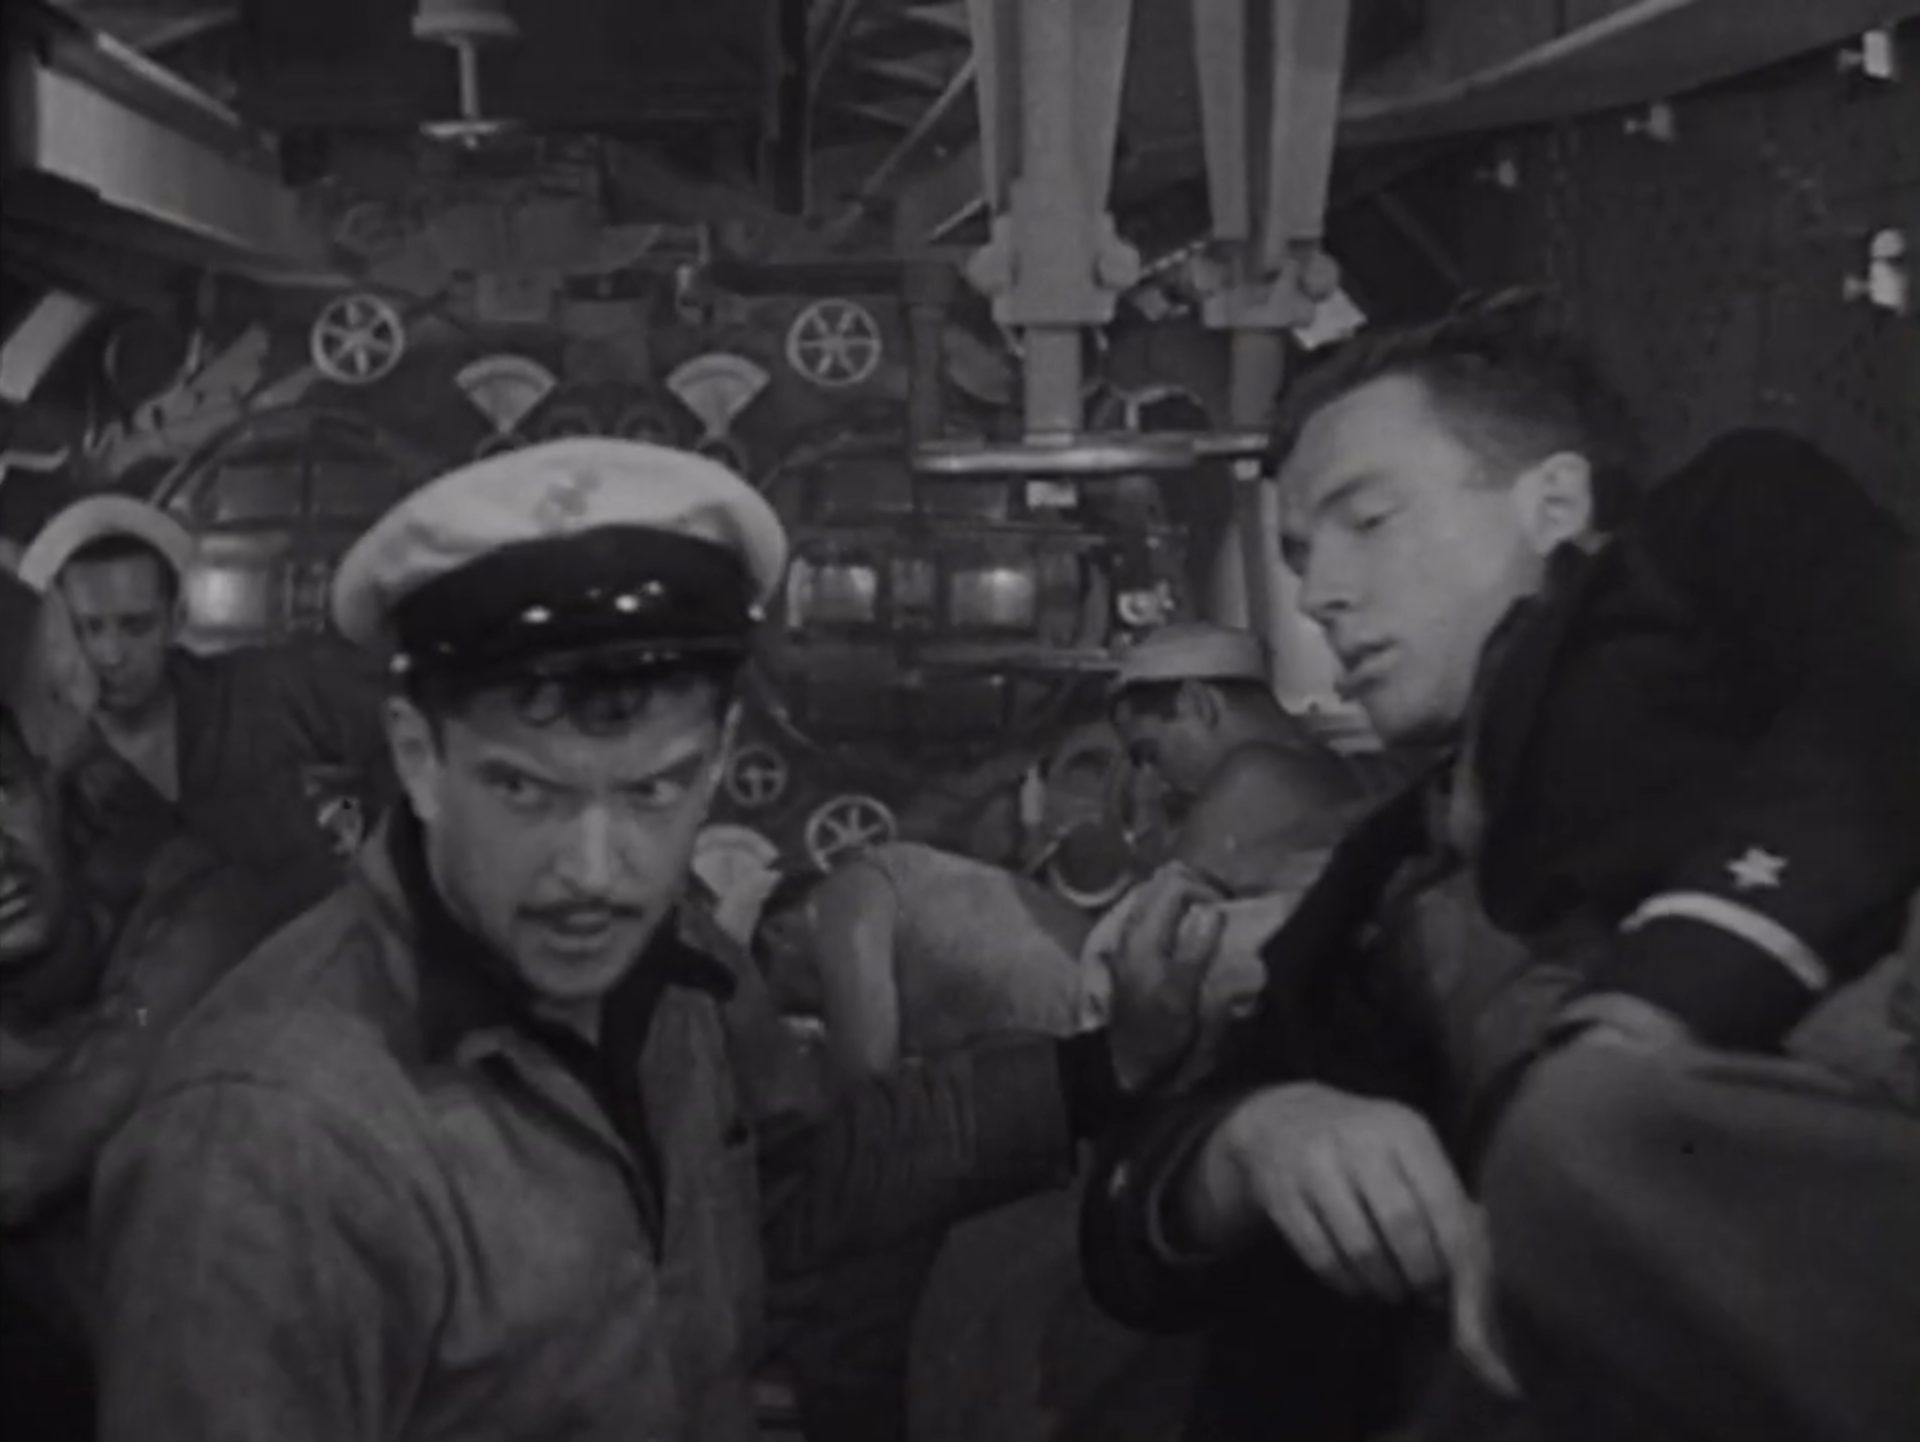 Schwarz-Weiß-Aufnahme: Blick in das U-Boot-Innere, erschöpfte Seeleute im Torpedoraum.